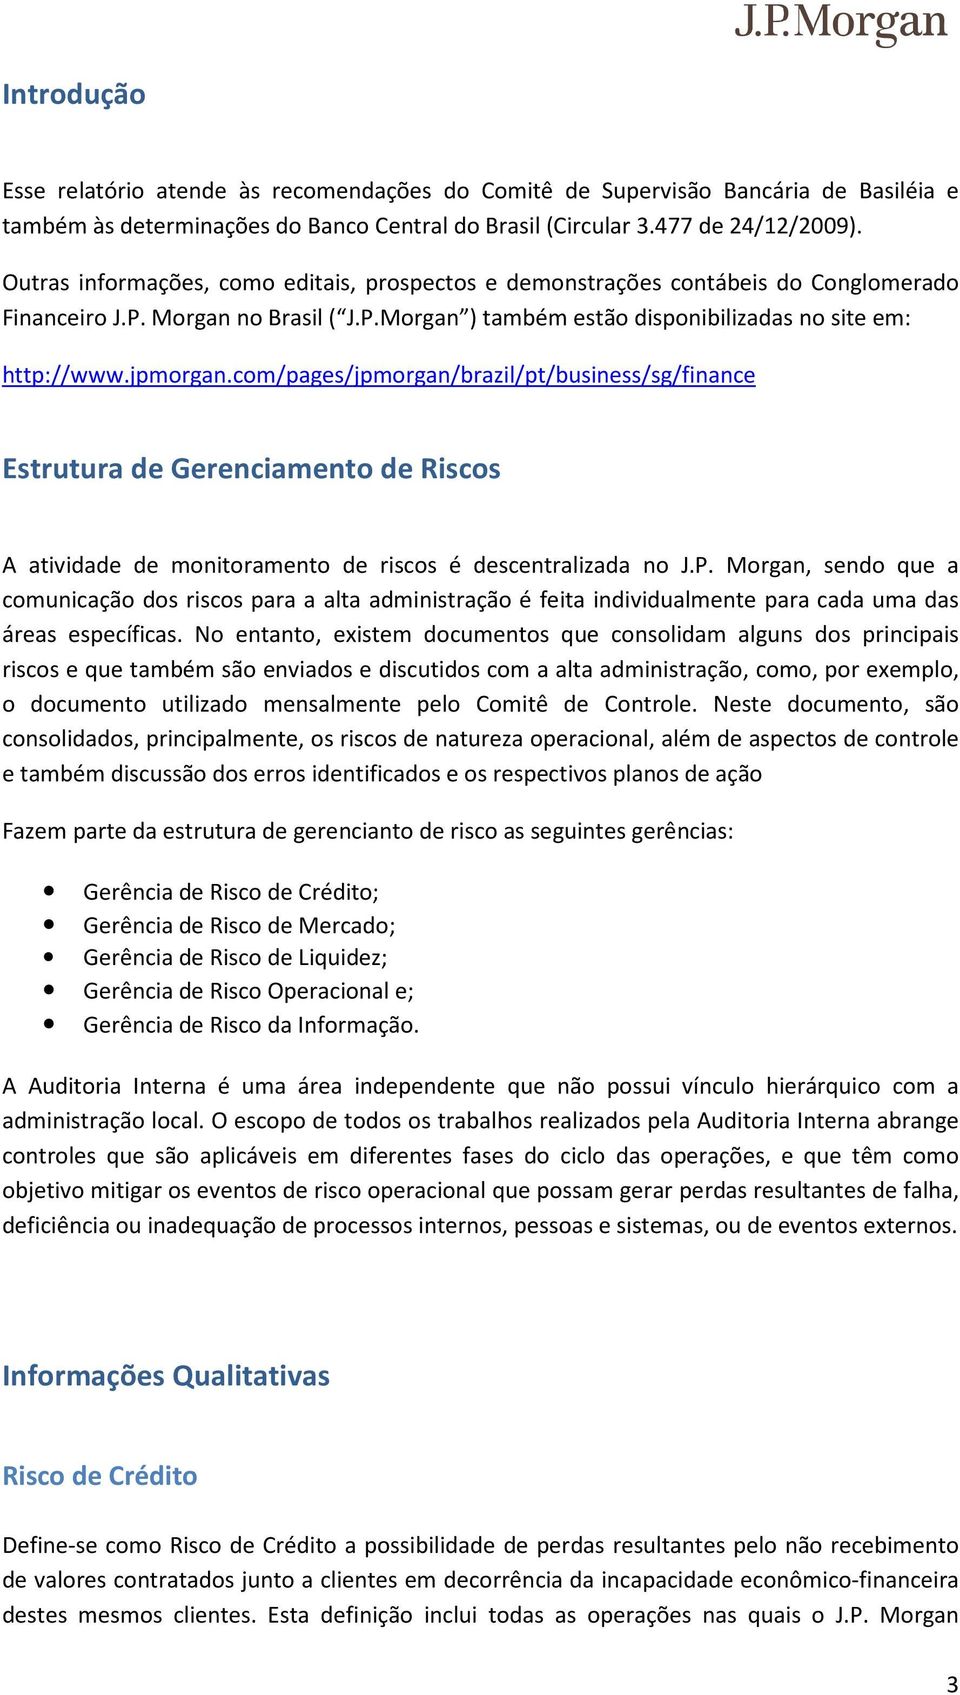 com/pages/jpmorgan/brazil/pt/business/sg/finance Estrutura de Gerenciamento de Riscos A atividade de monitoramento de riscos é descentralizada no J.P.